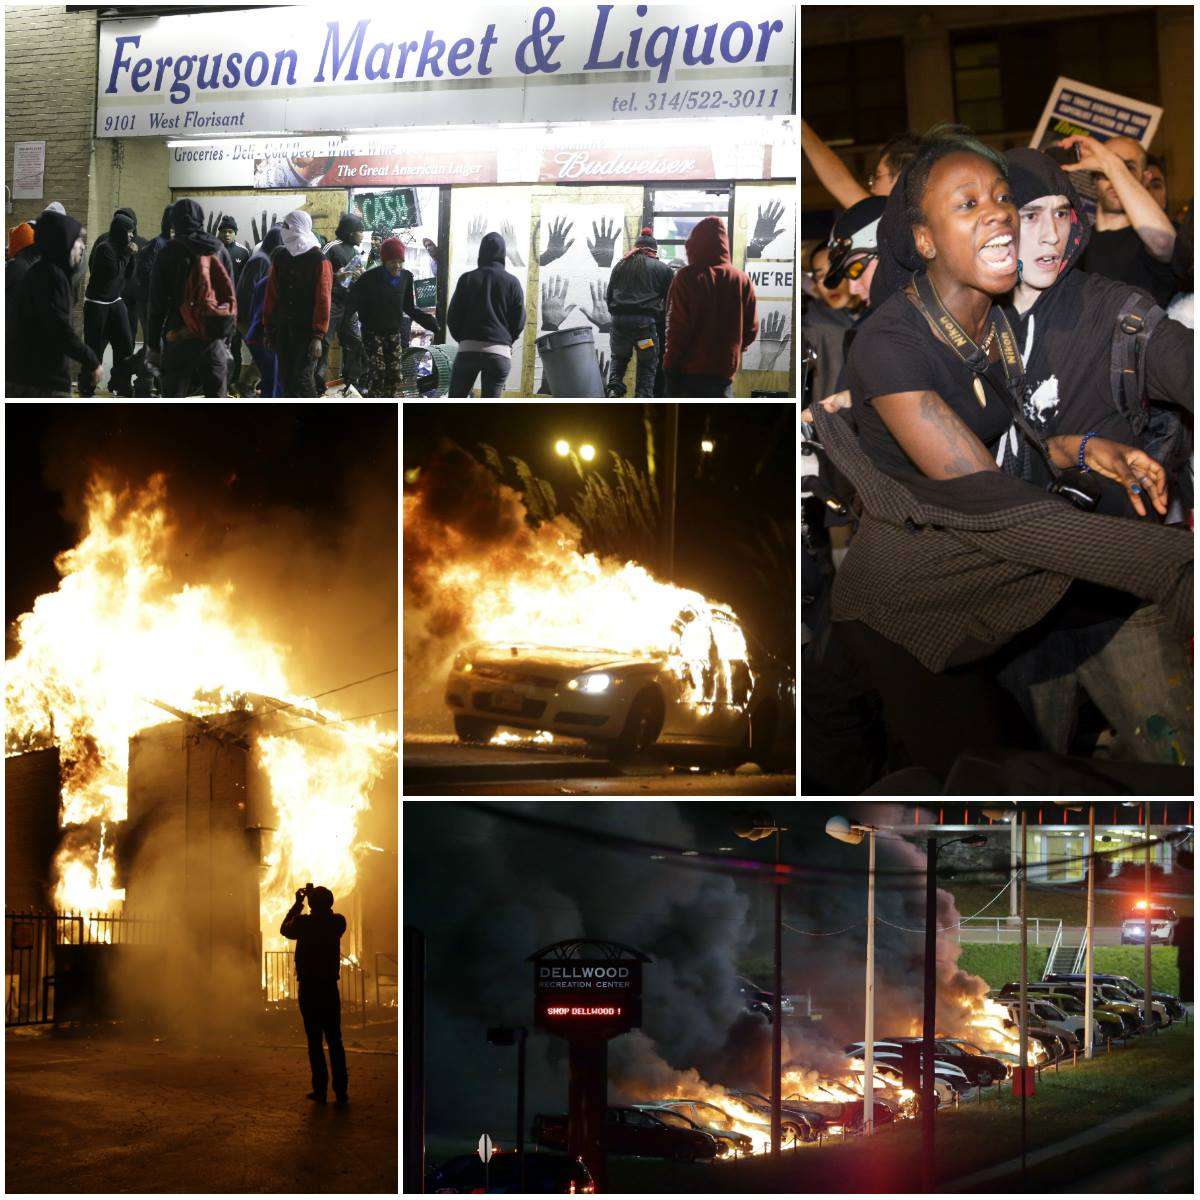 Fires in Ferguson